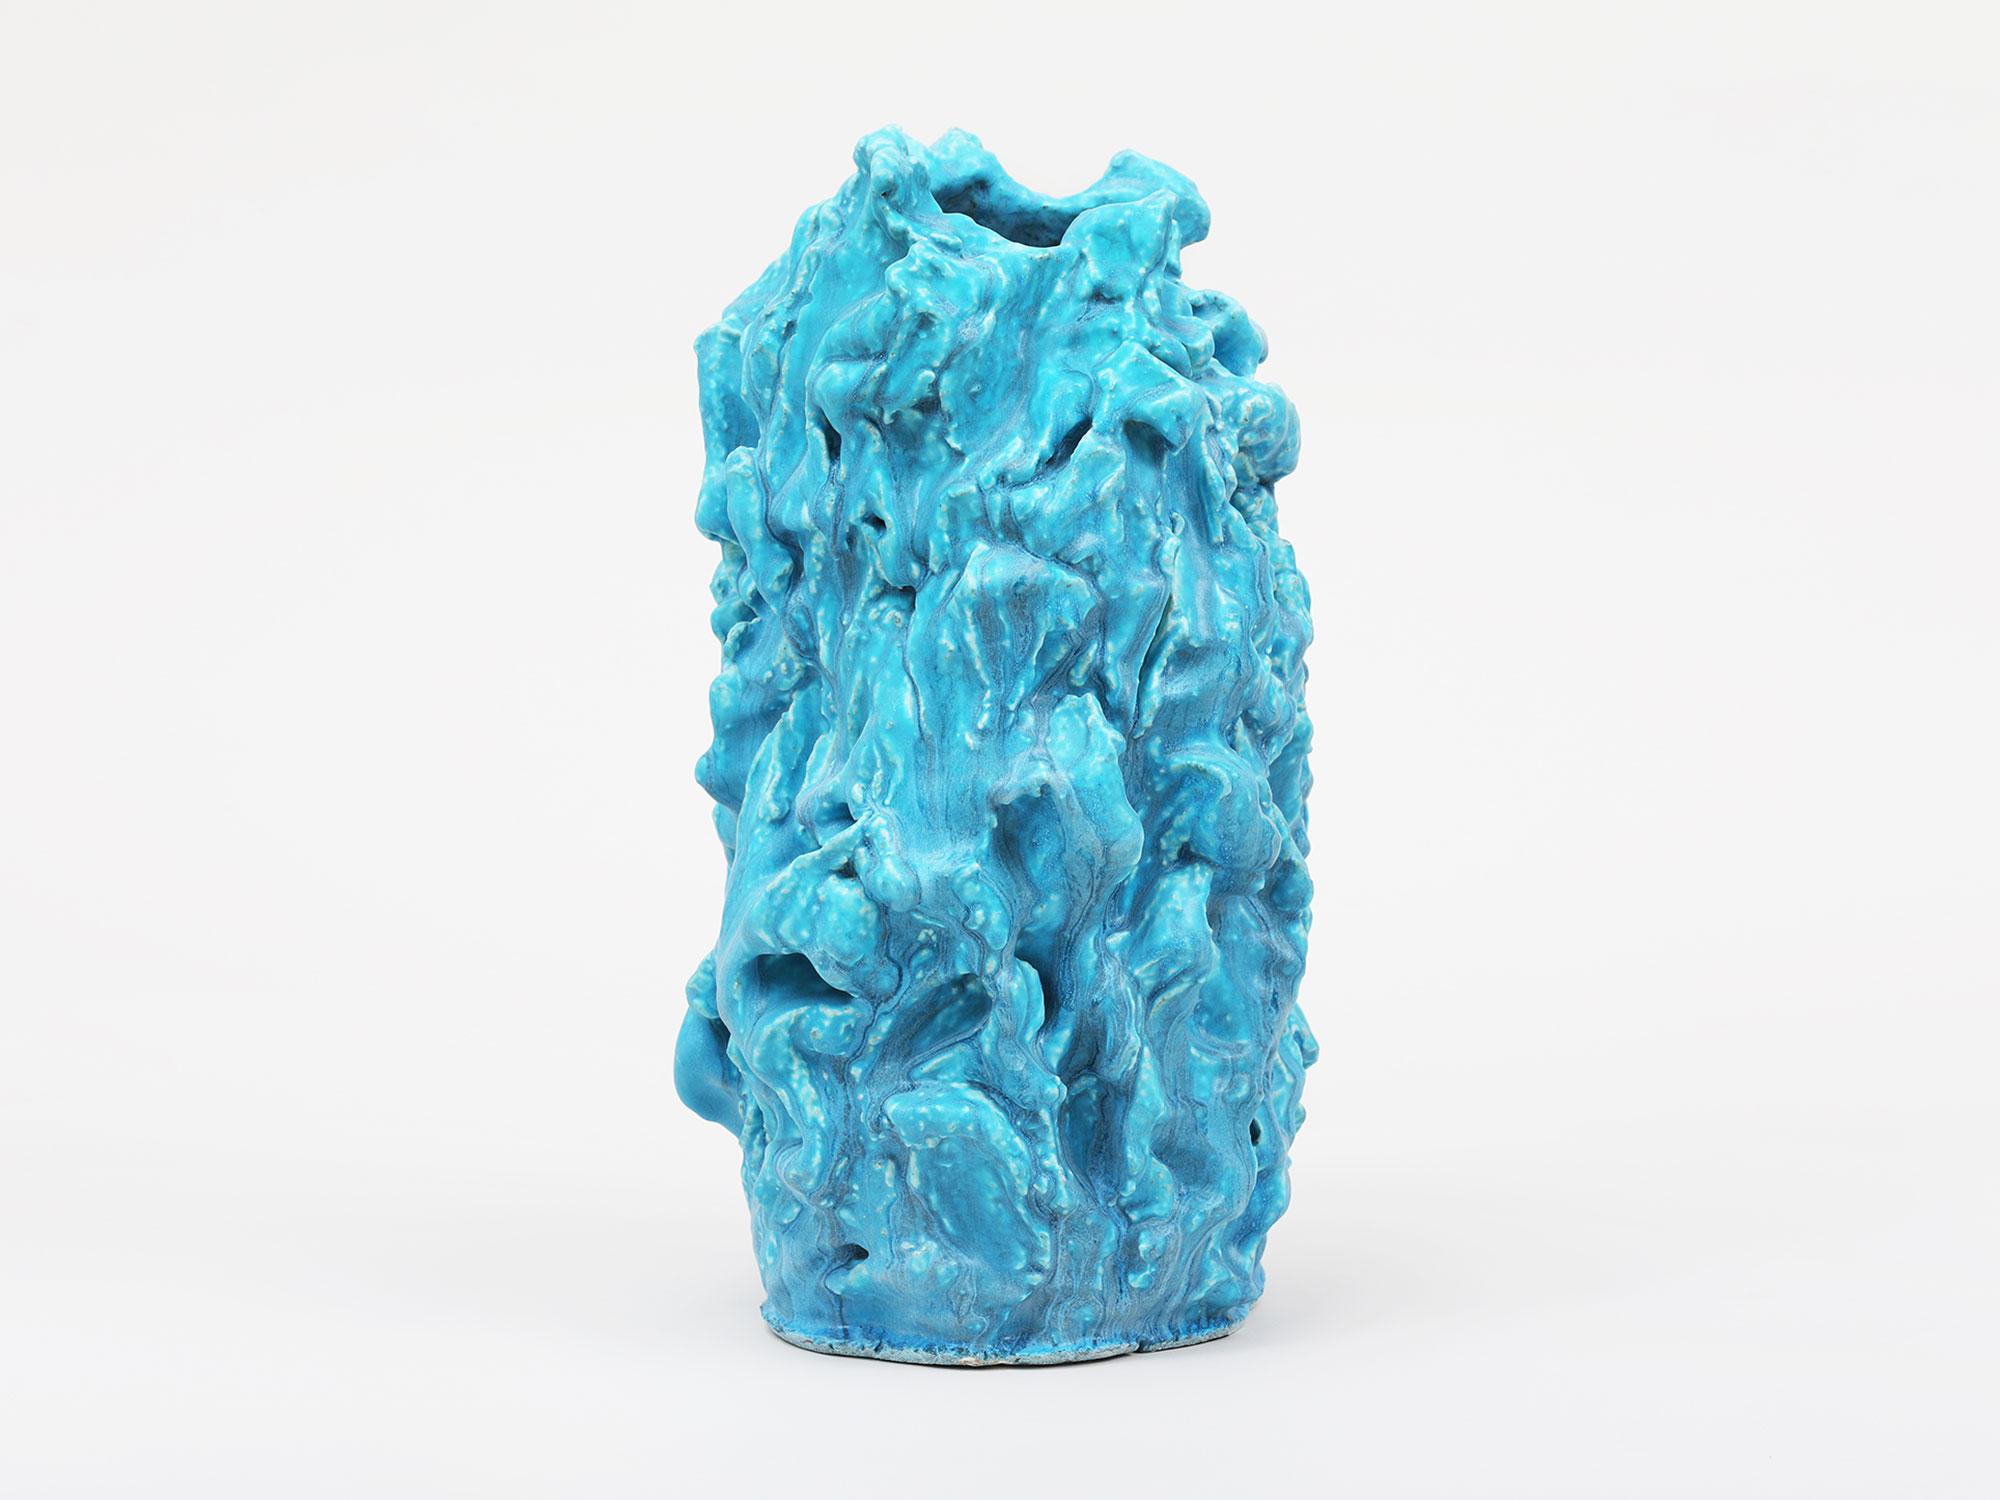 Großformatige, gestische, handgefertigte Keramikskulptur des minimalistischen Malers Guy Corriero aus New York City mit blauer Glasur.